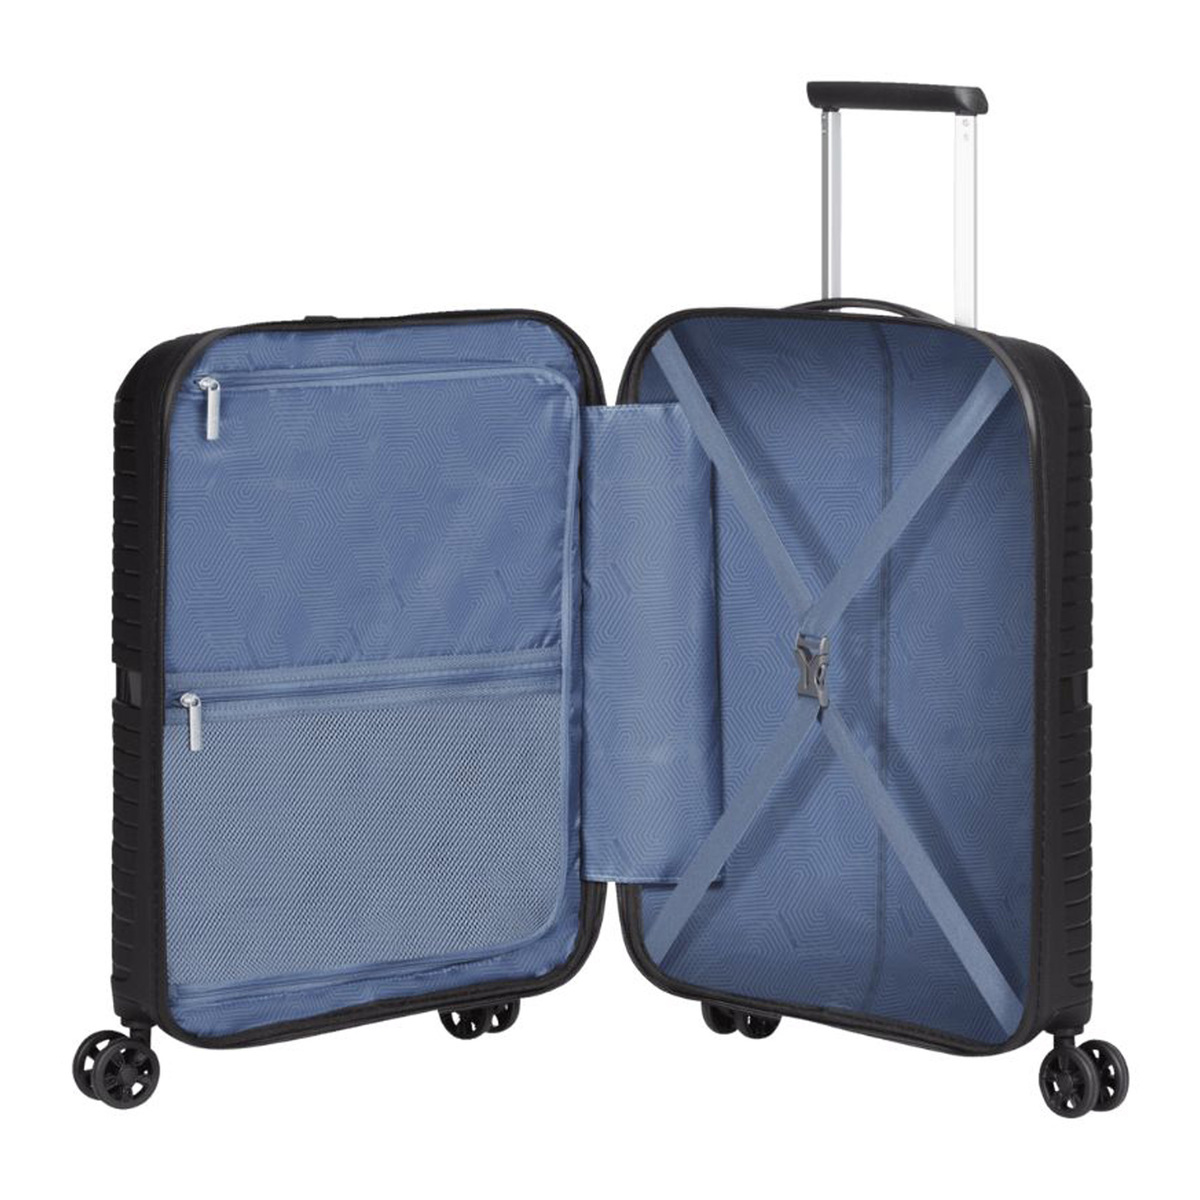 امريكان توريستر حقيبة سفر بعجلات صلبة إيركونيك سبينر مع قفل TSA، 67 سم، أسود أونيكس